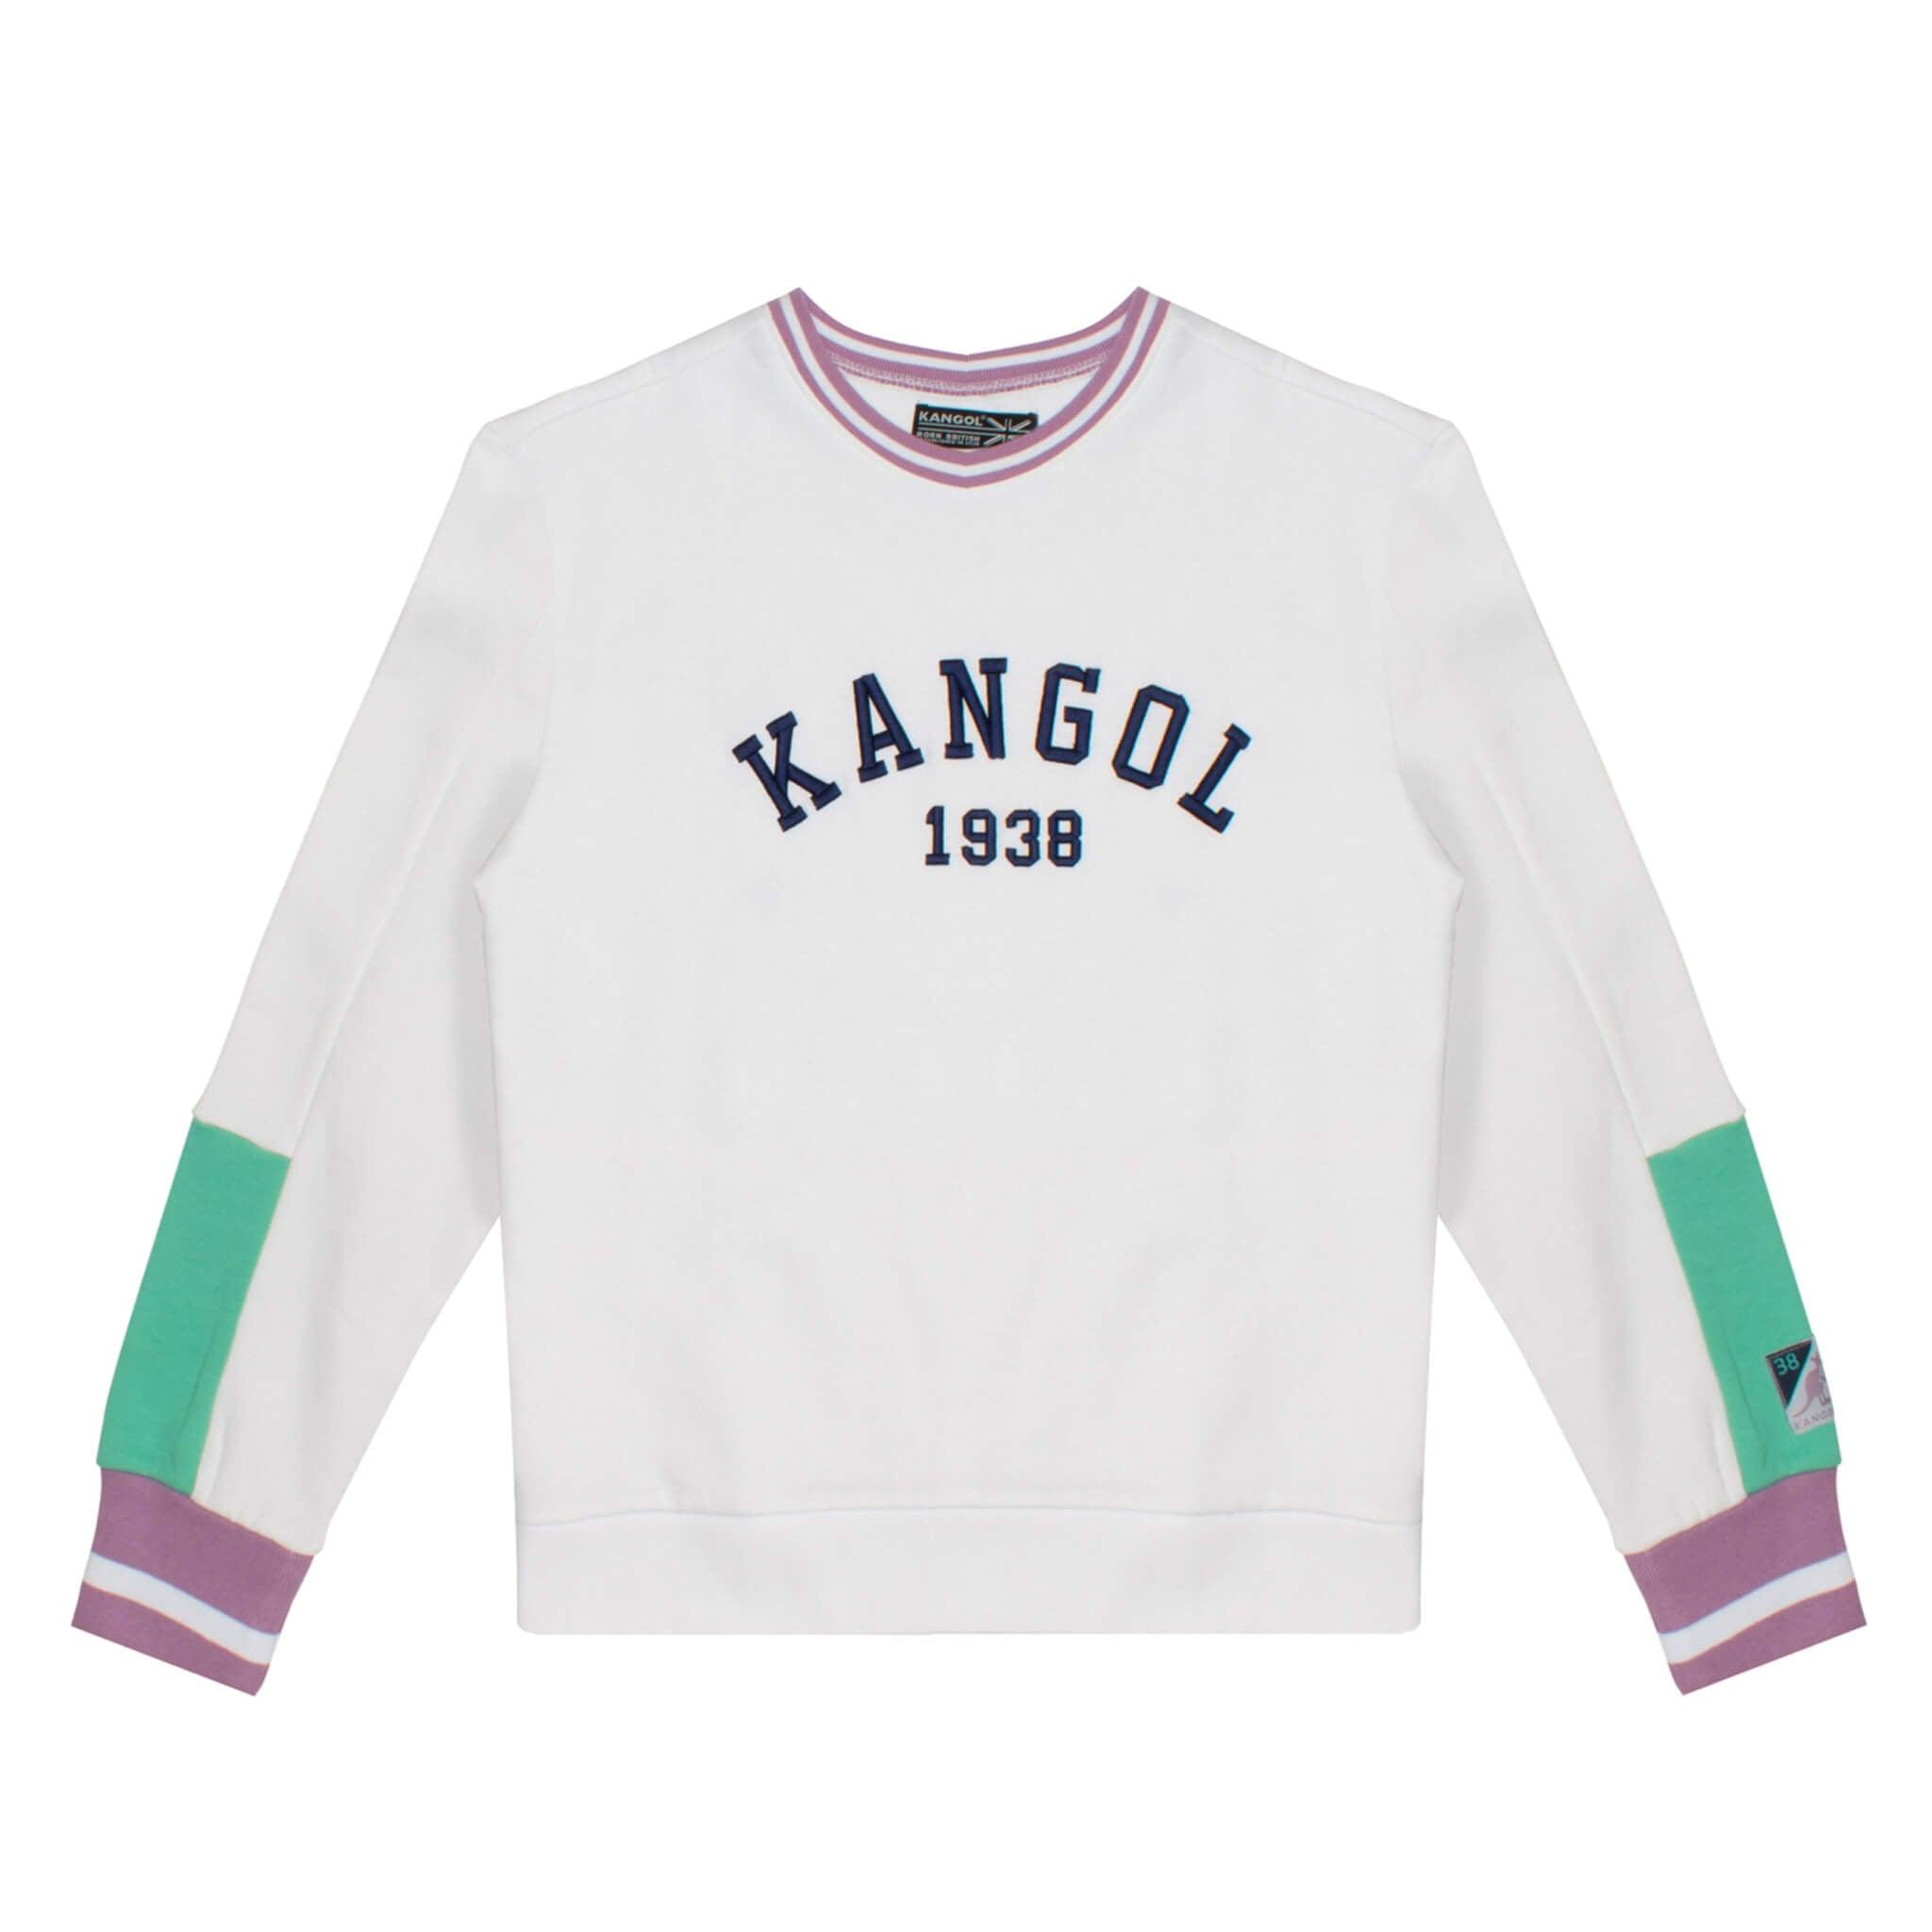 Kangol Retro Popover - Fashion Hub Club